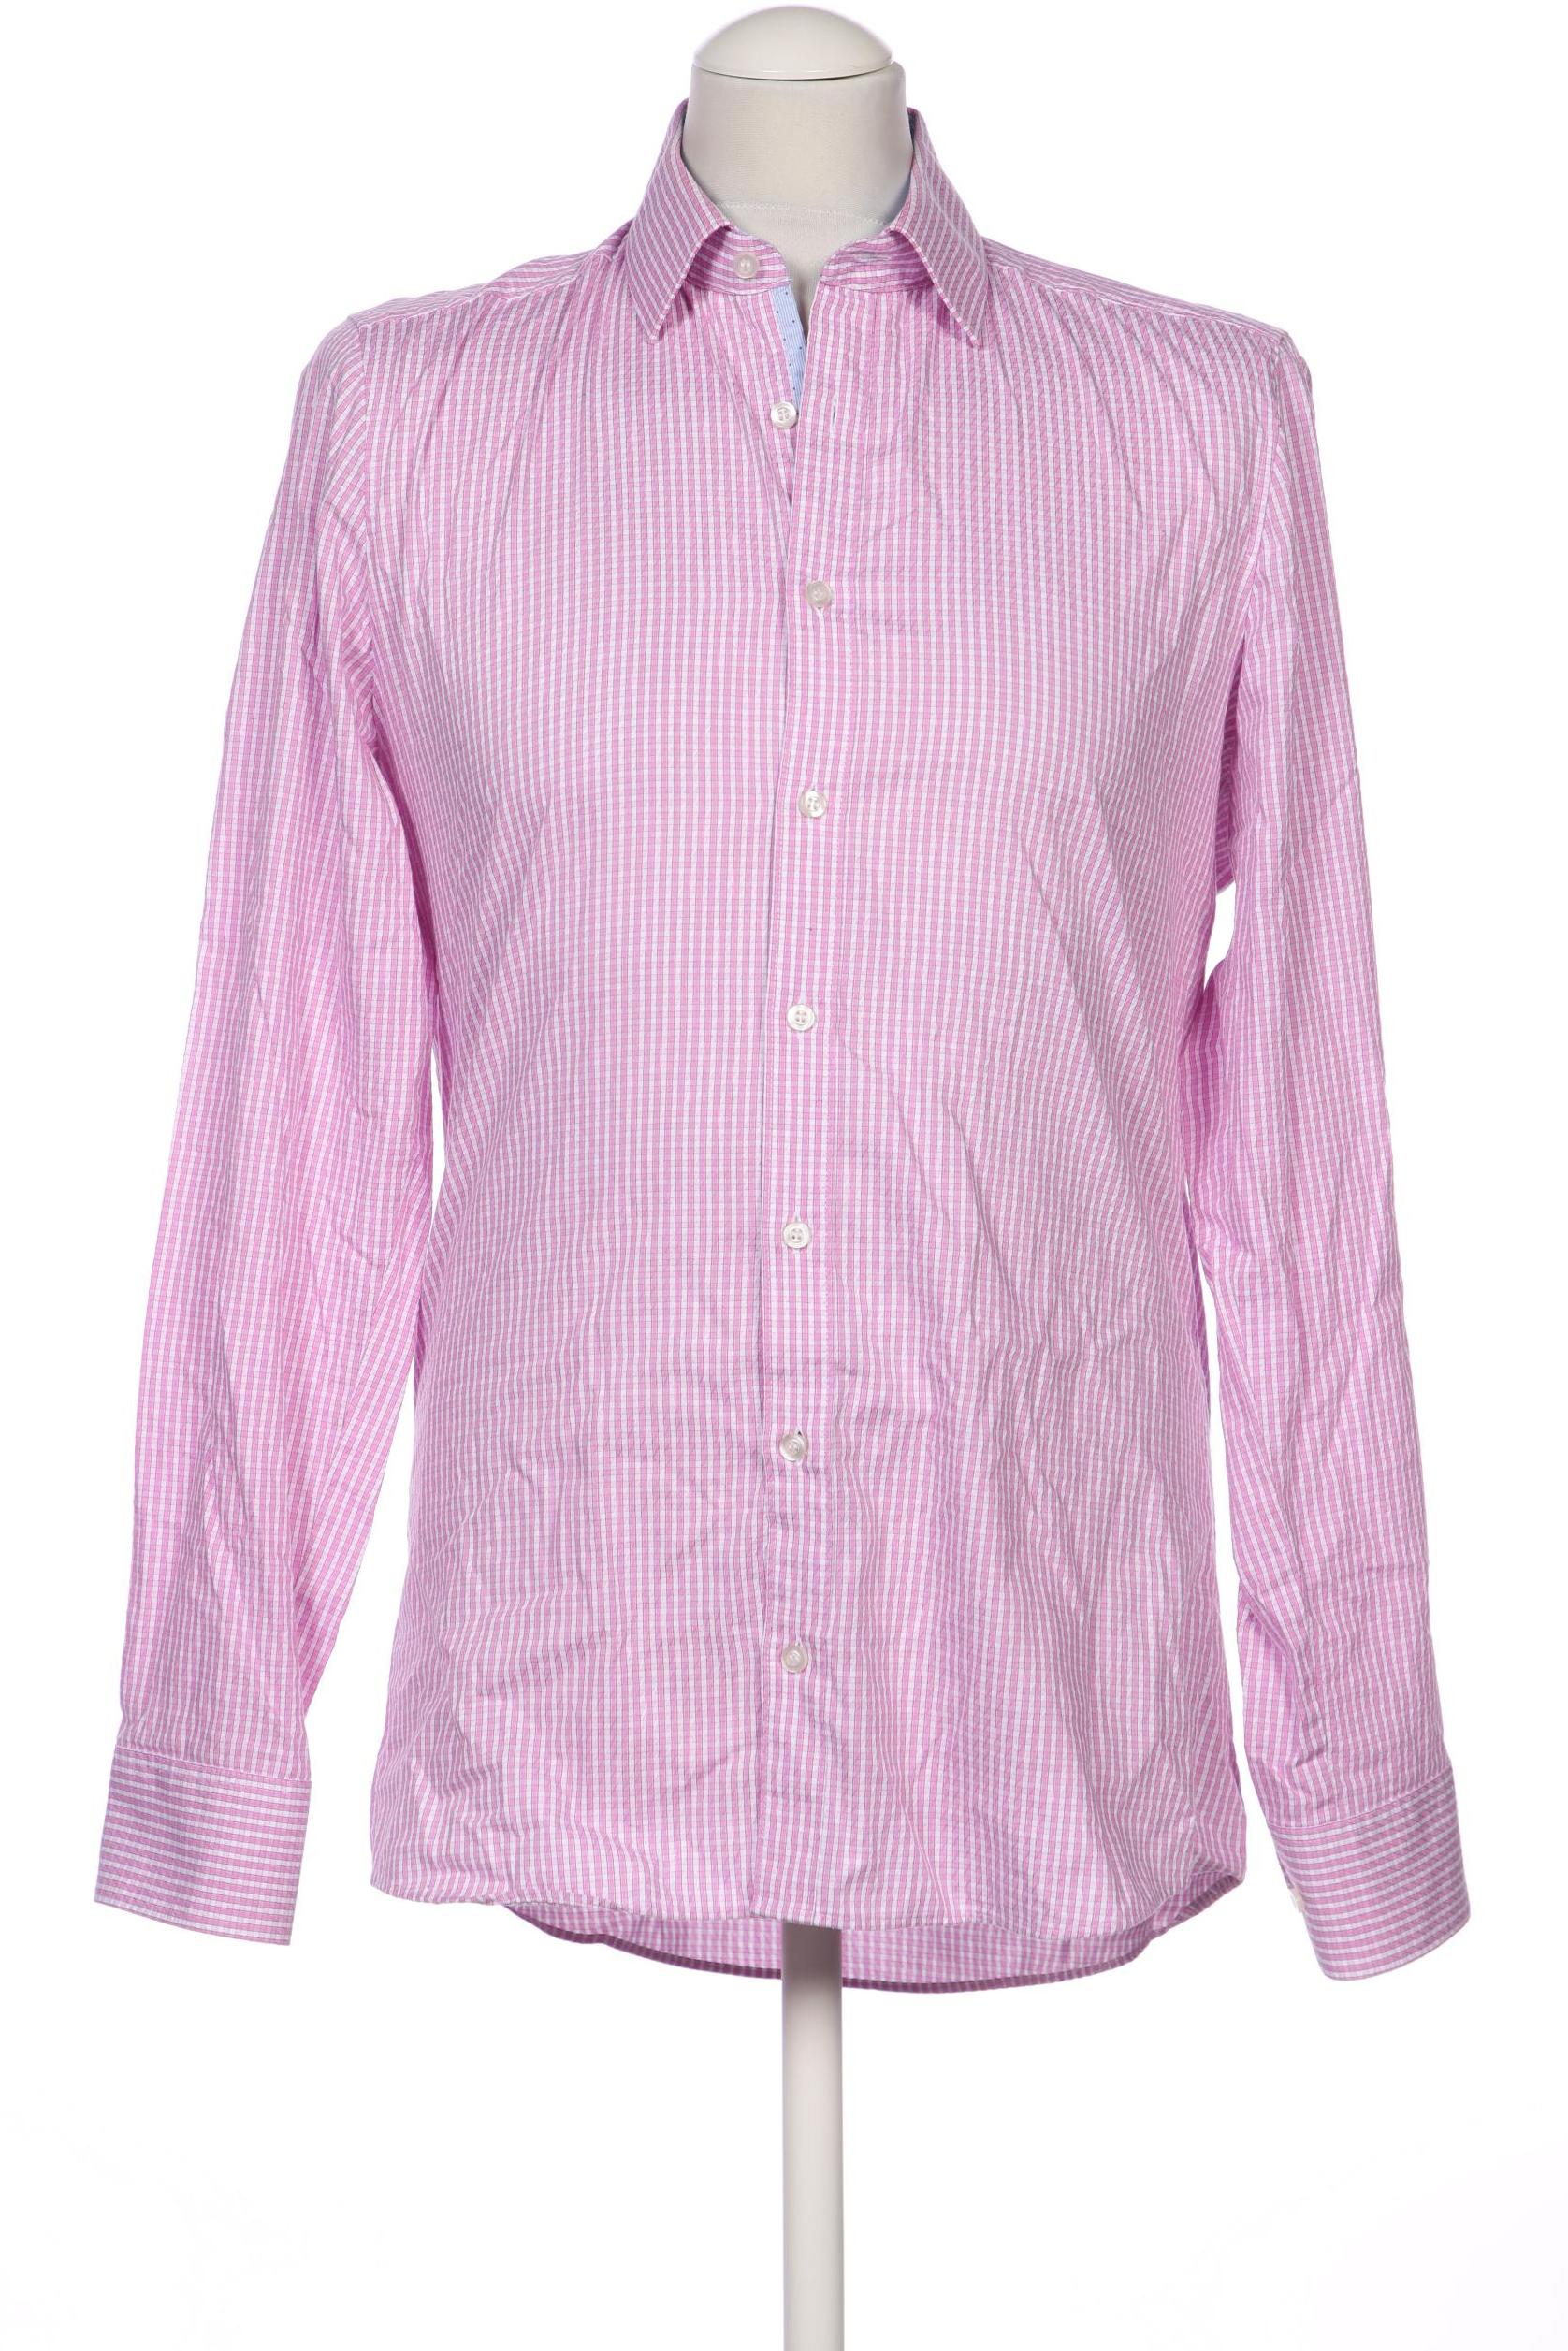 Olymp Herren Hemd, pink, Gr. 50 von Olymp